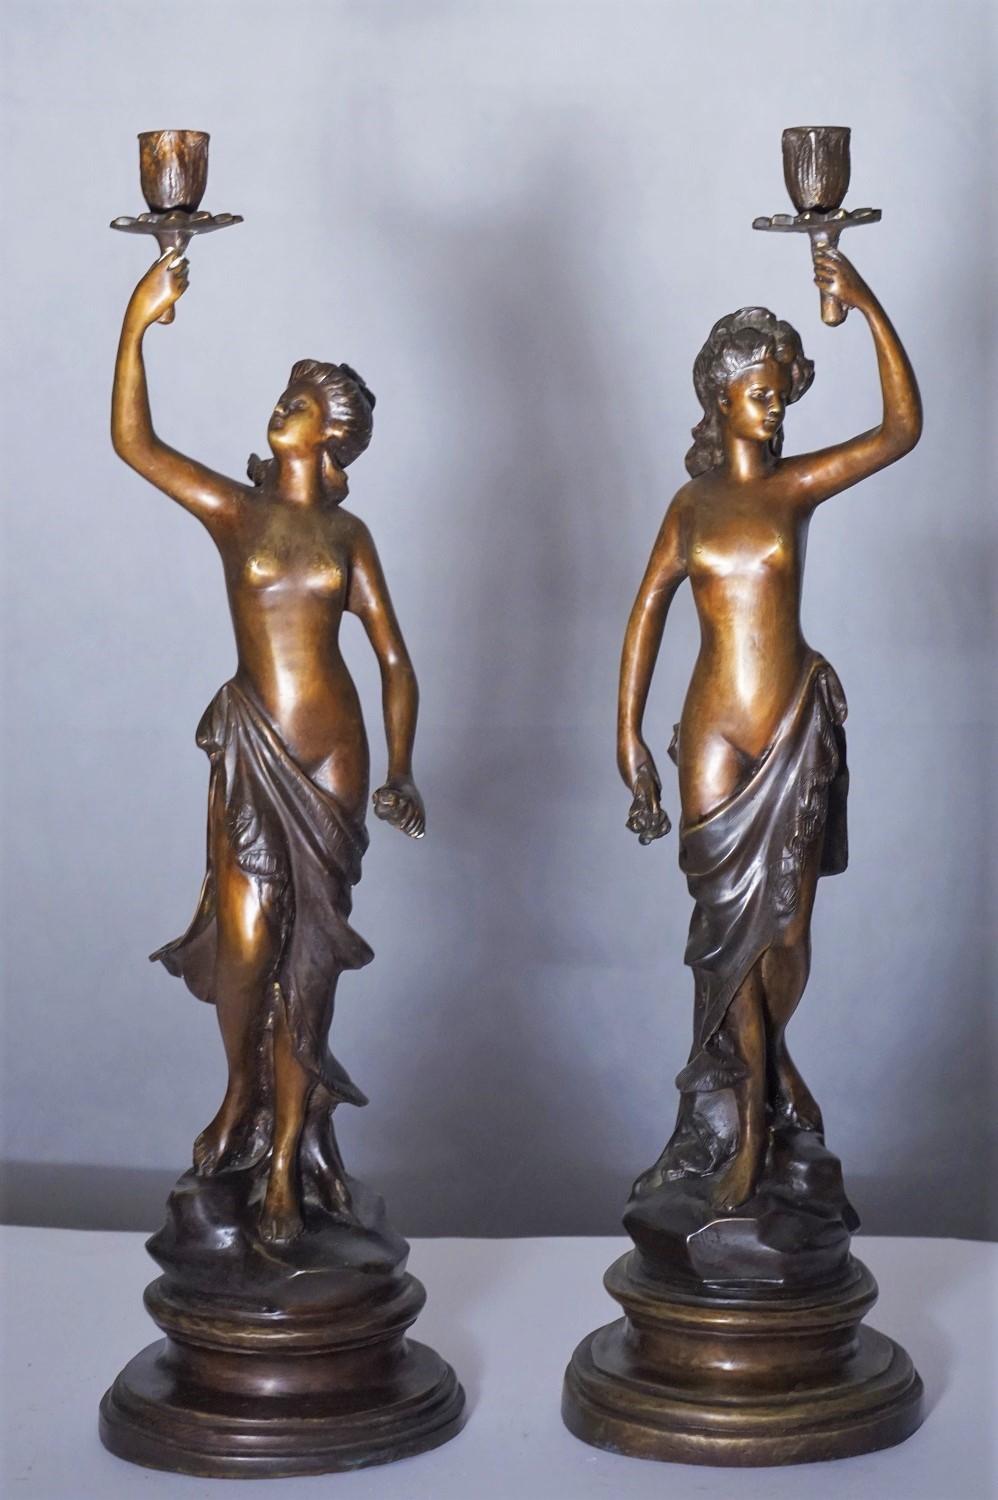 Une paire de lourds candélabres en bronze patiné, France, milieu du 19e siècle. Deux sculptures féminines tenant un bougeoir reposant sur une base circulaire en bronze, signées par l'artiste.
Mesures :
Hauteur 21 in / 54 cm
Diamètre de la base :